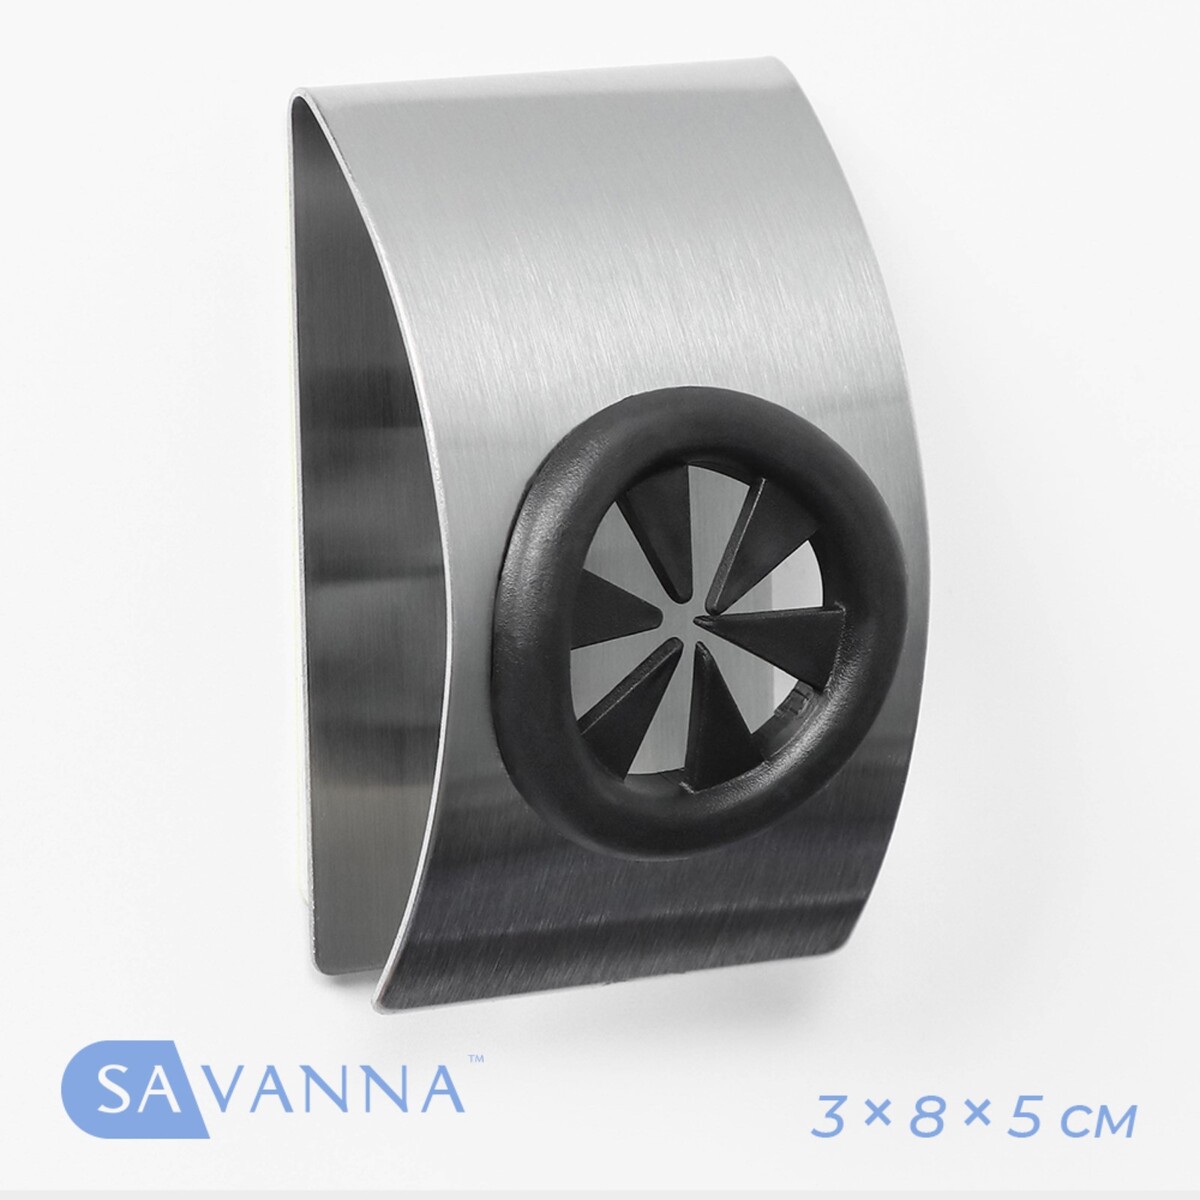 Металлический самоклеящийся держатель для салфеток и полотенец savanna chrome loft сlamp, 3×8×5 см держатель для полотенец металлический 8 крючков 44 см